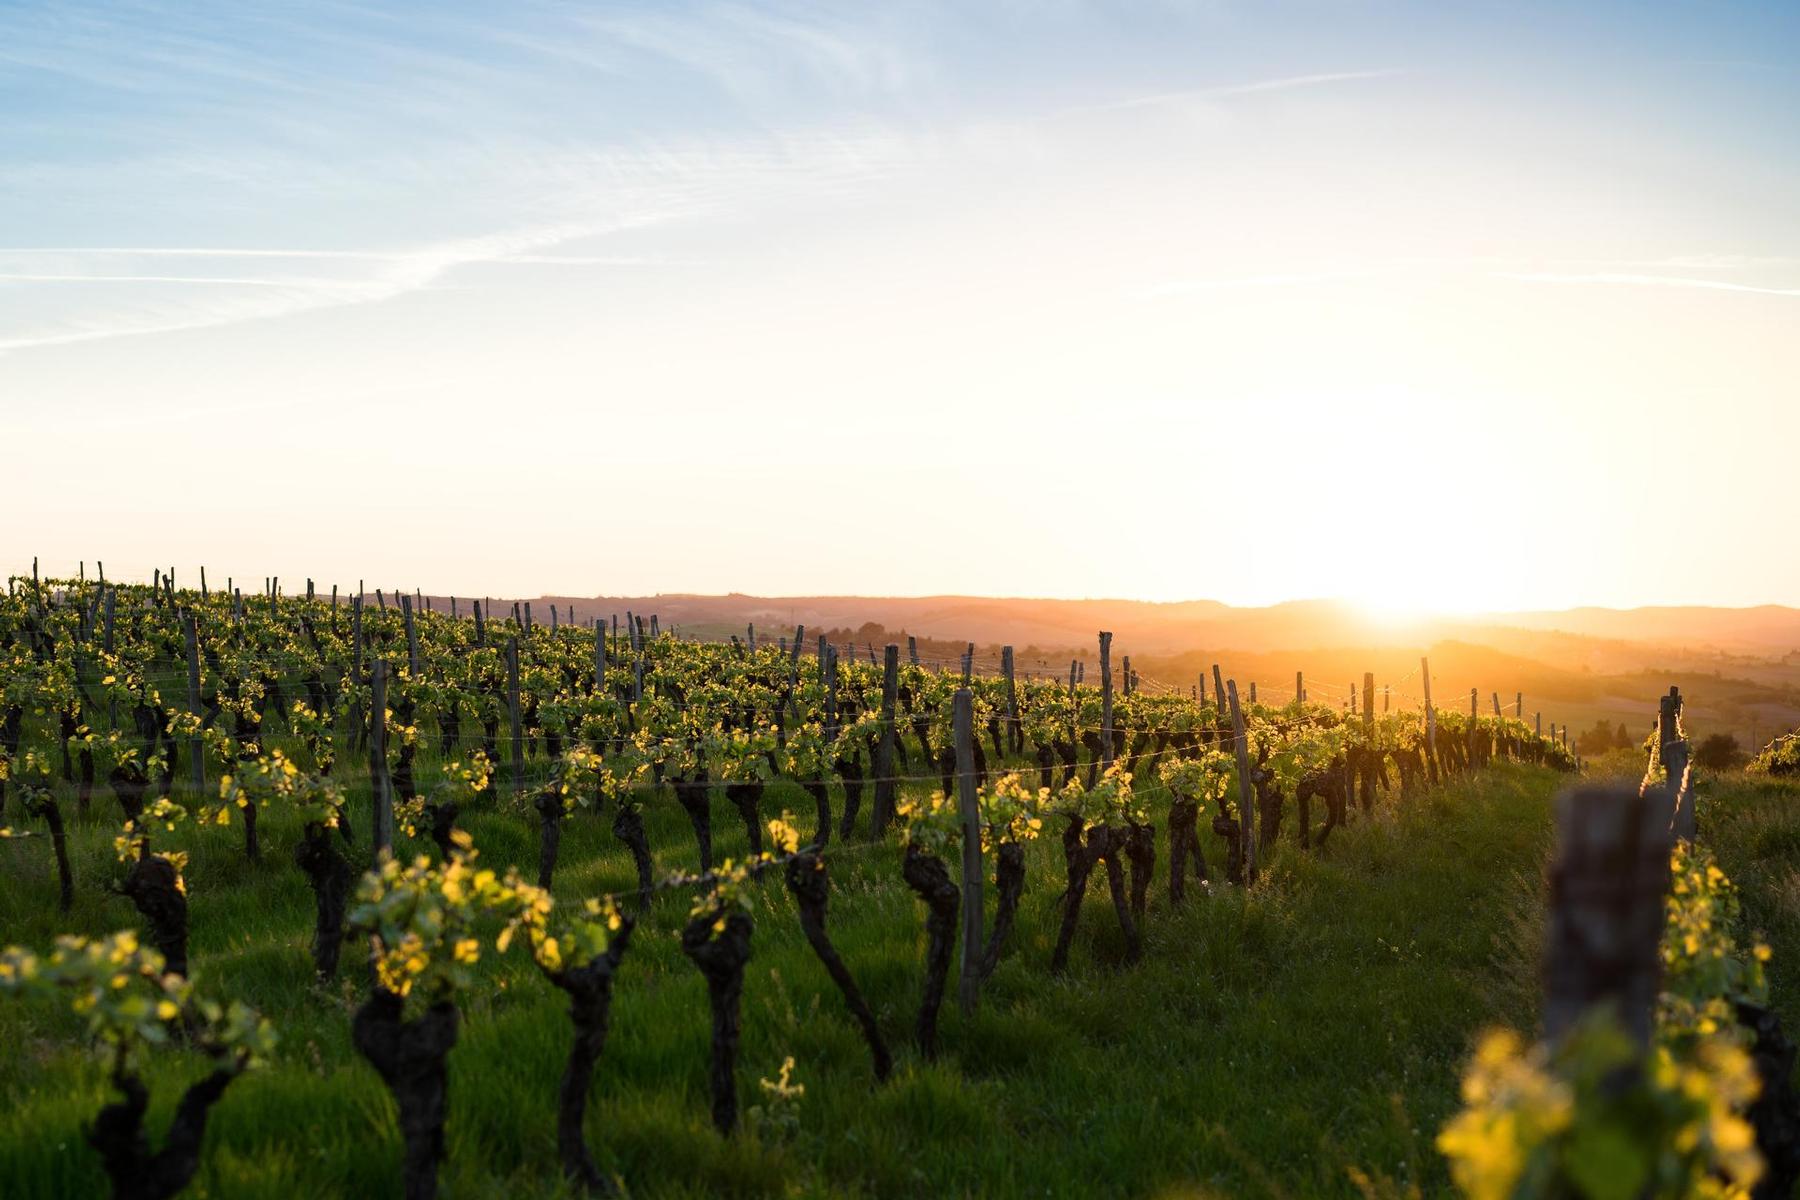 Vineyard at sunset 